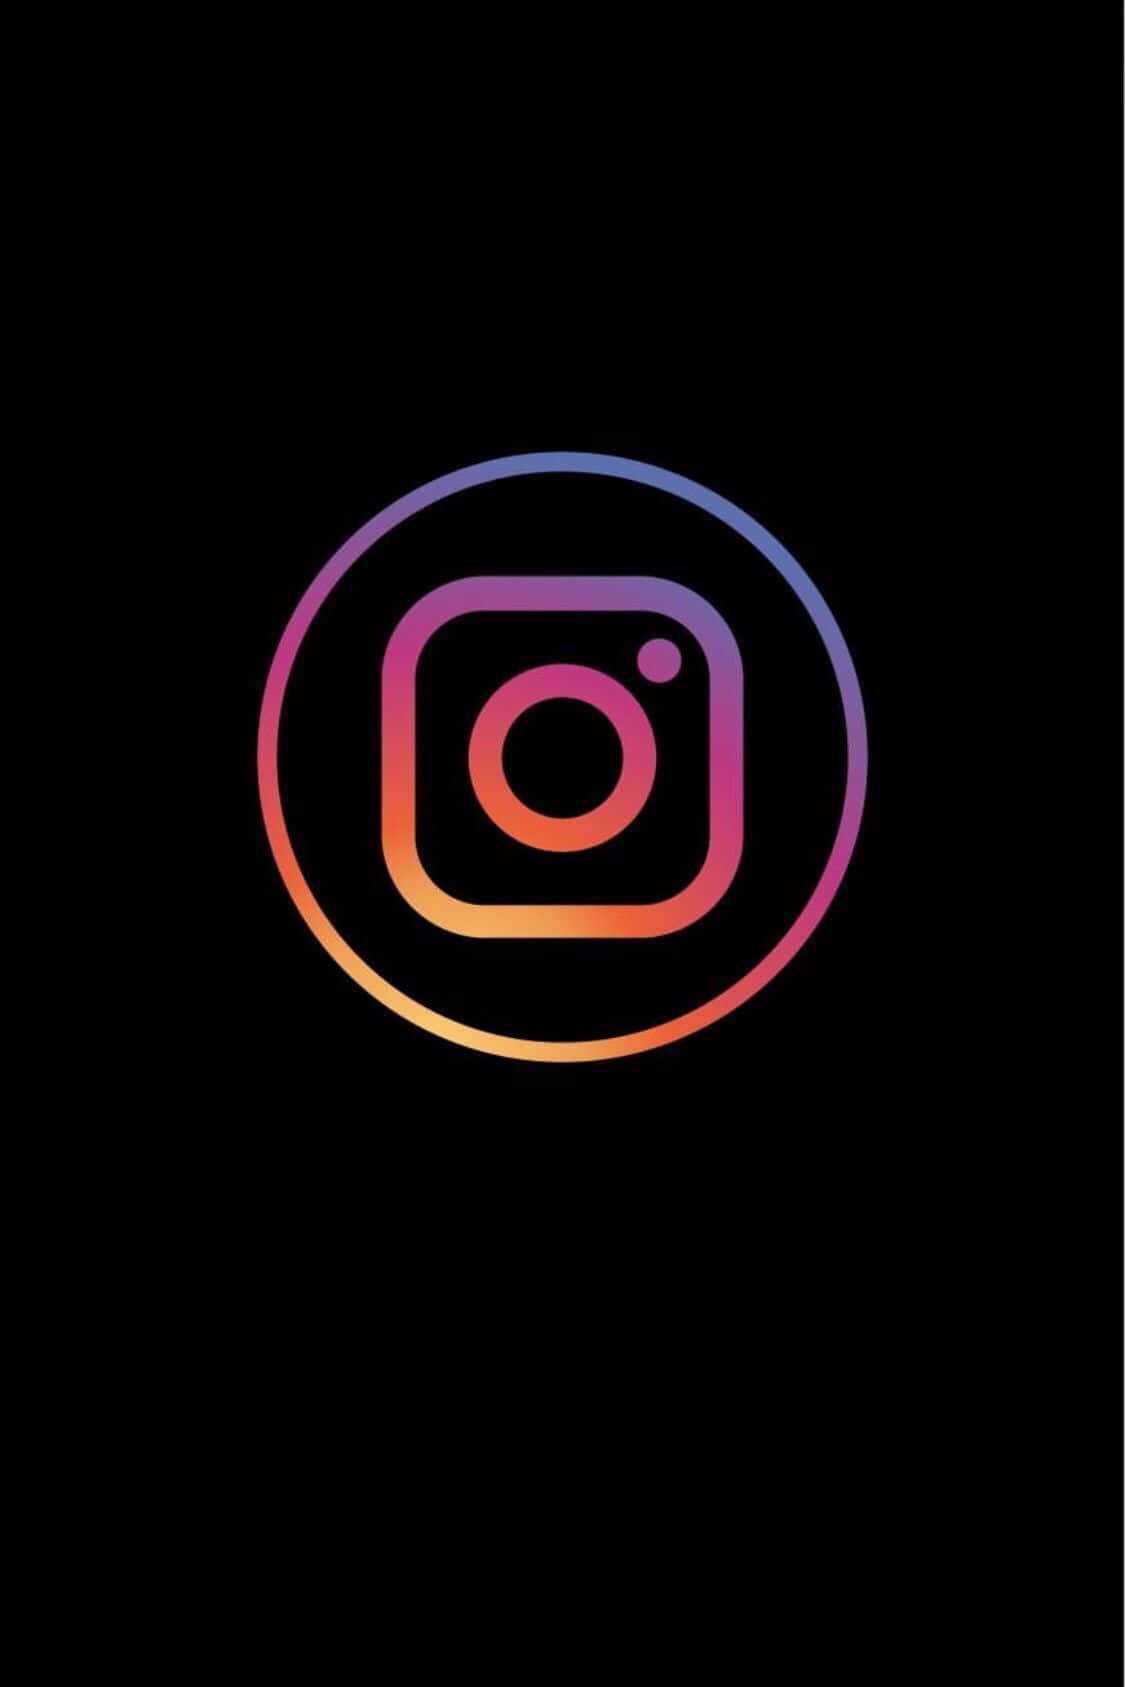 Logotransparente De Instagram Sobre Fondo Negro.